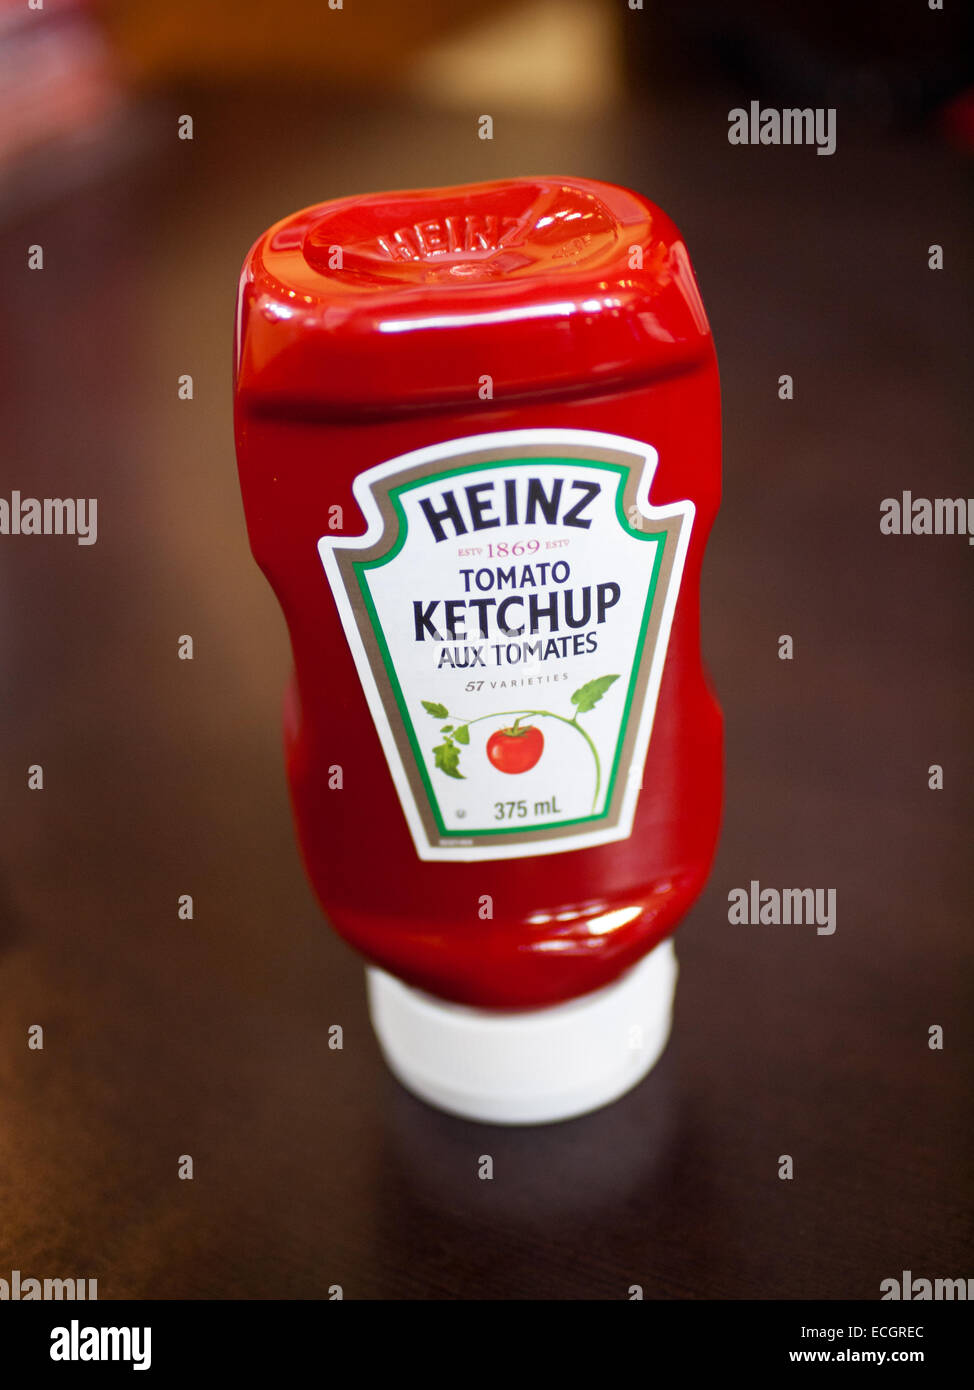 L'envers d'une bouteille de ketchup de tomate Heinz. Avec l'emballage des étiquettes en français et en anglais s'affiche. Banque D'Images